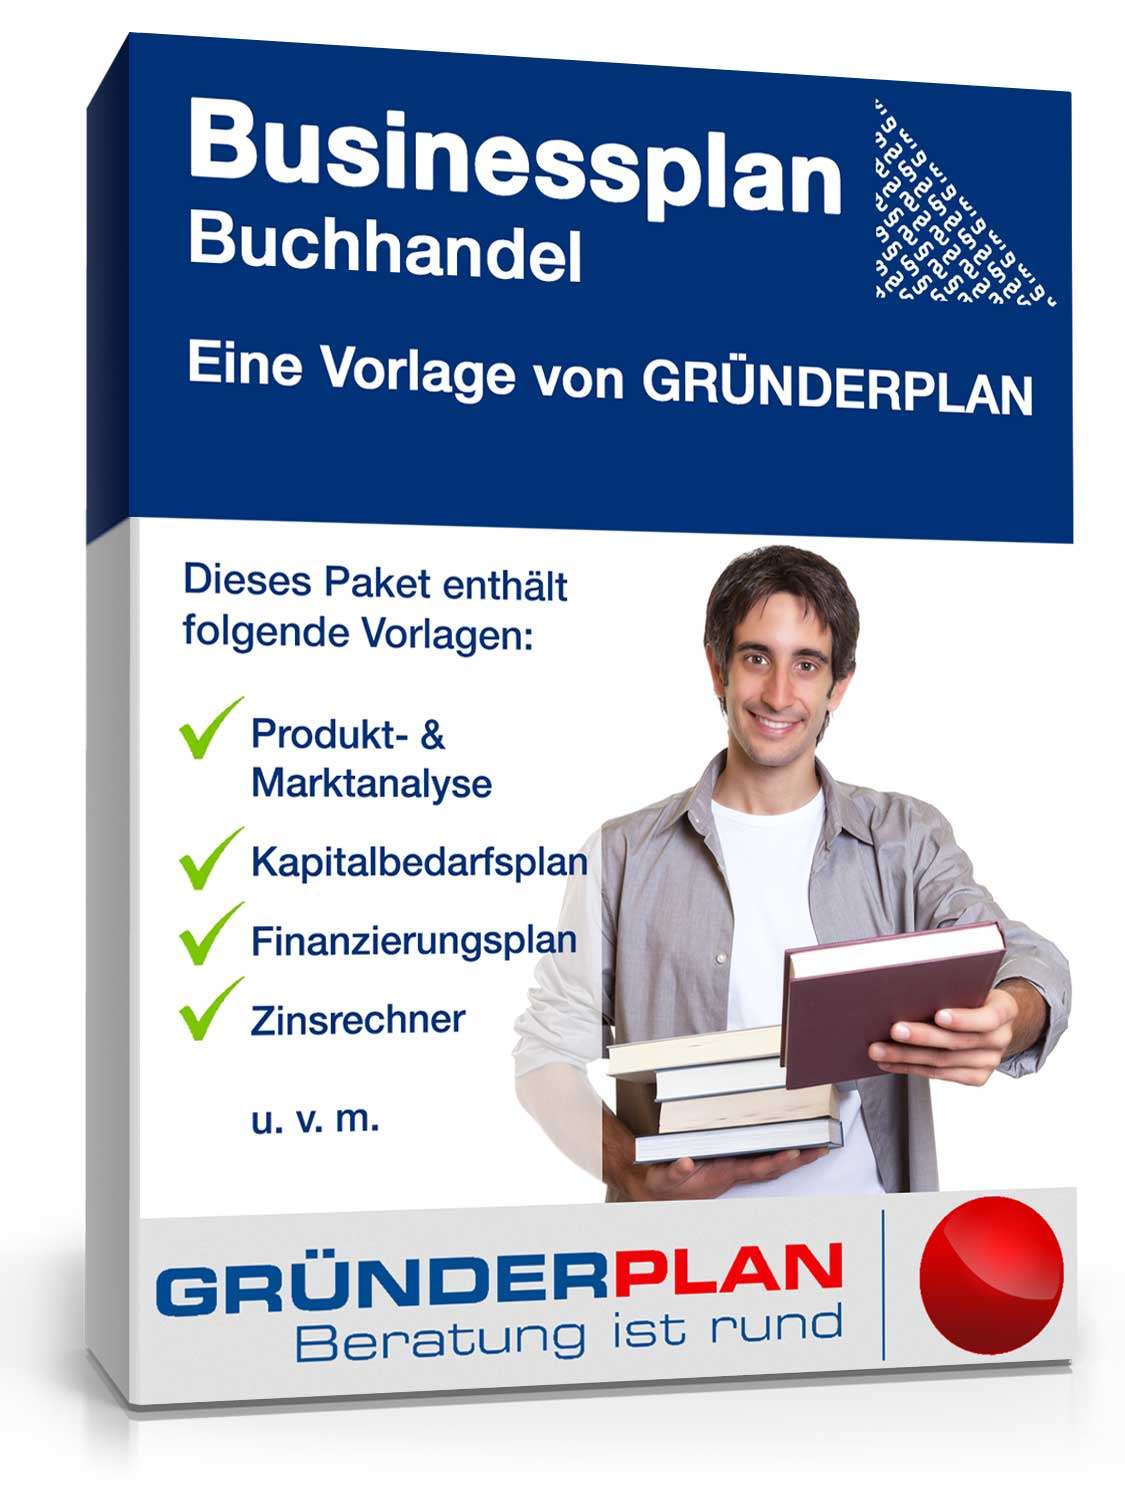 Hauptbild des Produkts: Businessplan Buchhandel von Gründerplan